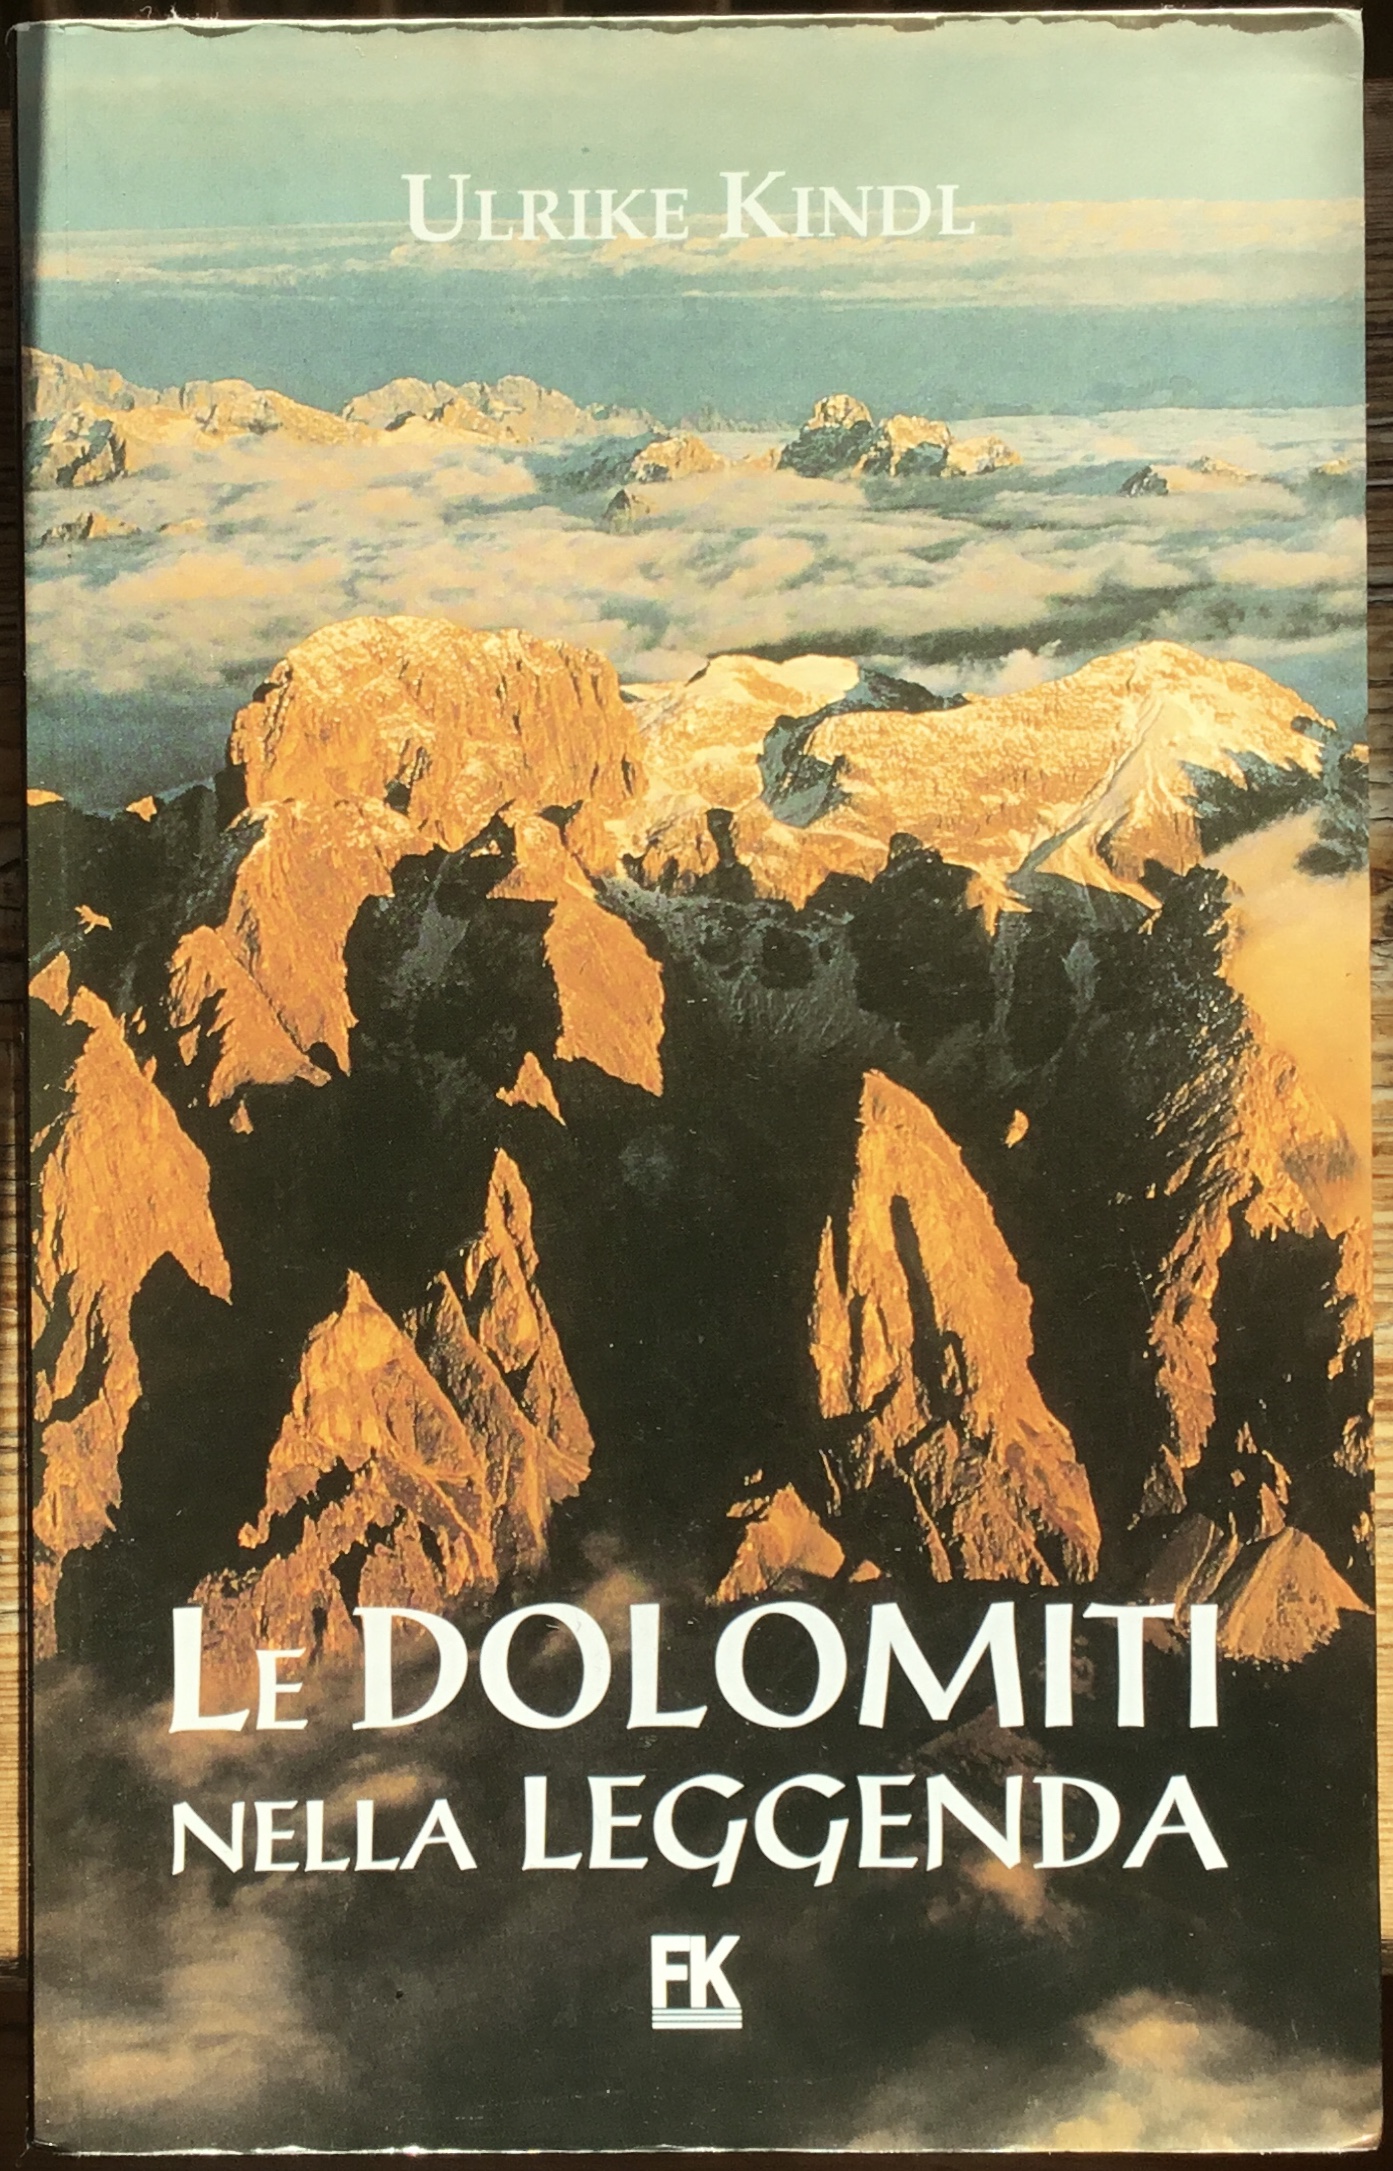 Le Dolomiti nella leggenda